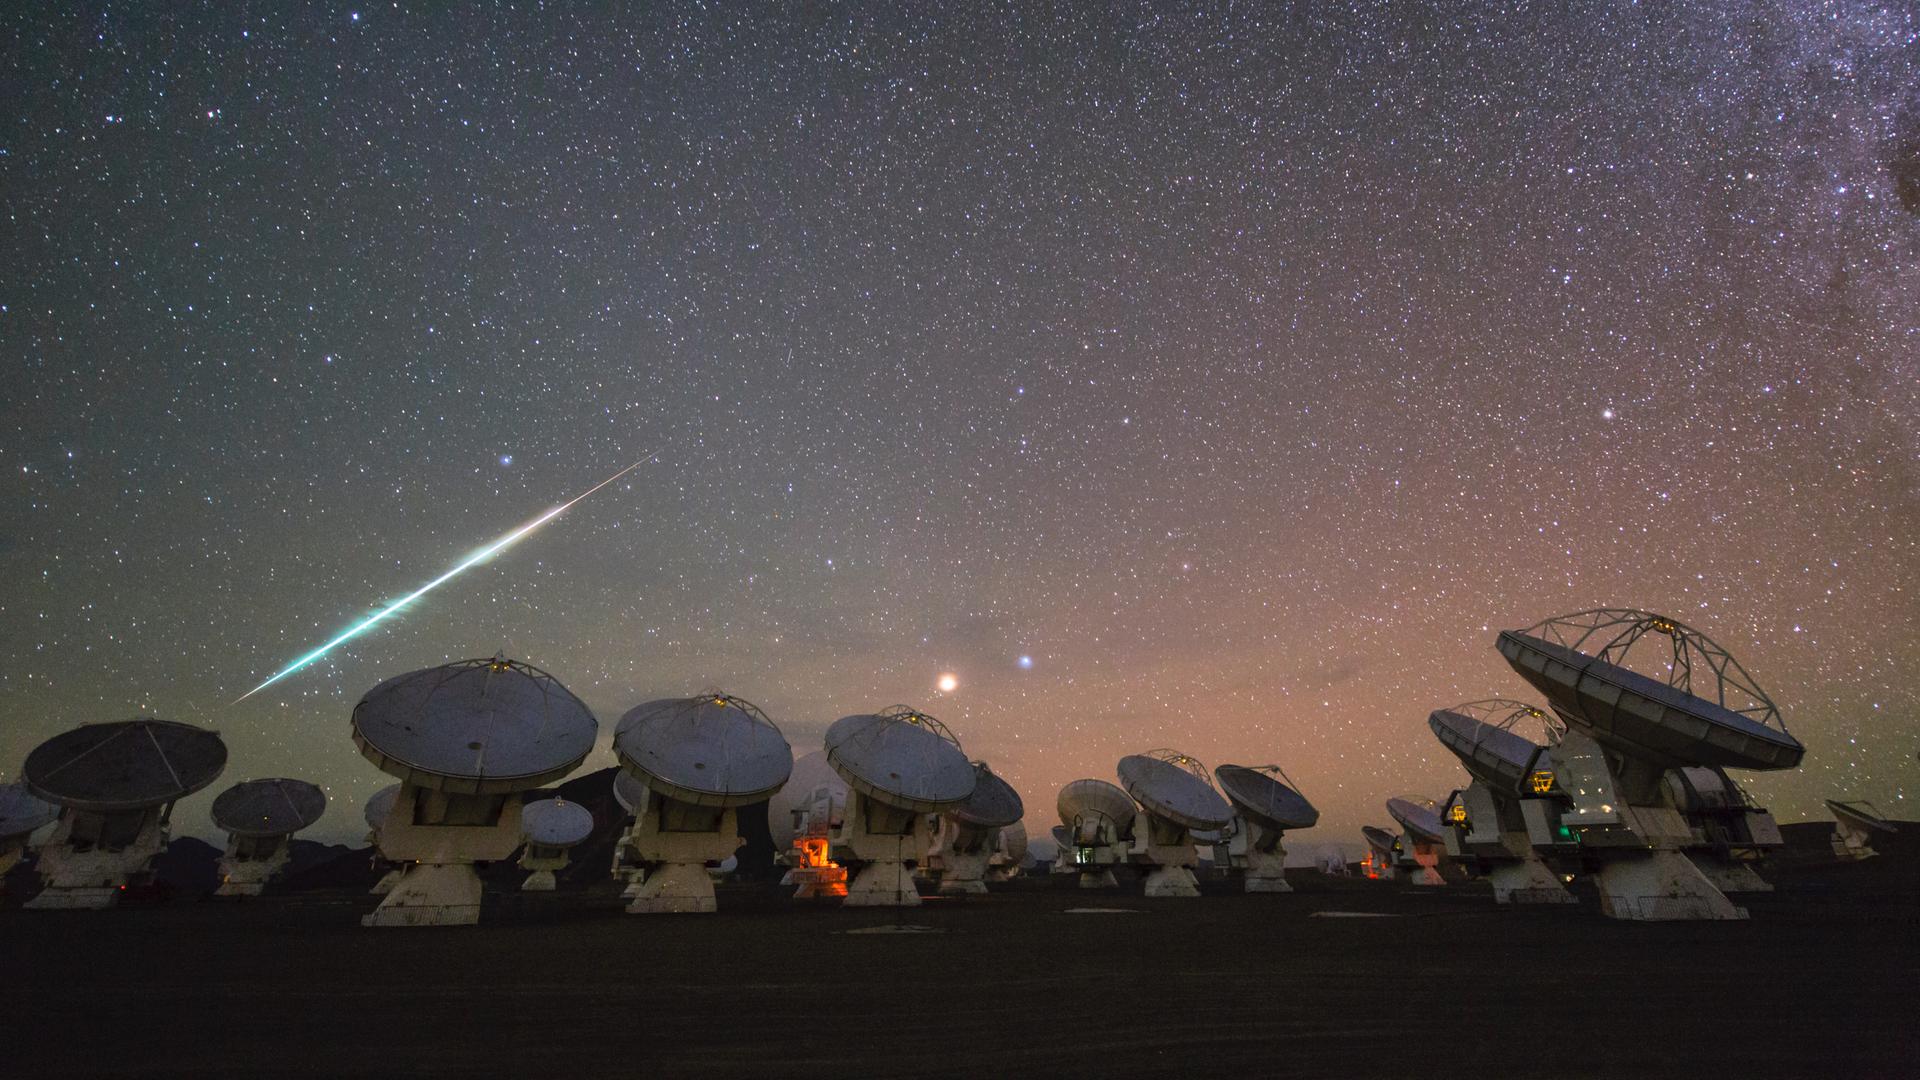 Eine helle Sternschnuppe über der Teleskopanlage ALMA in Chile